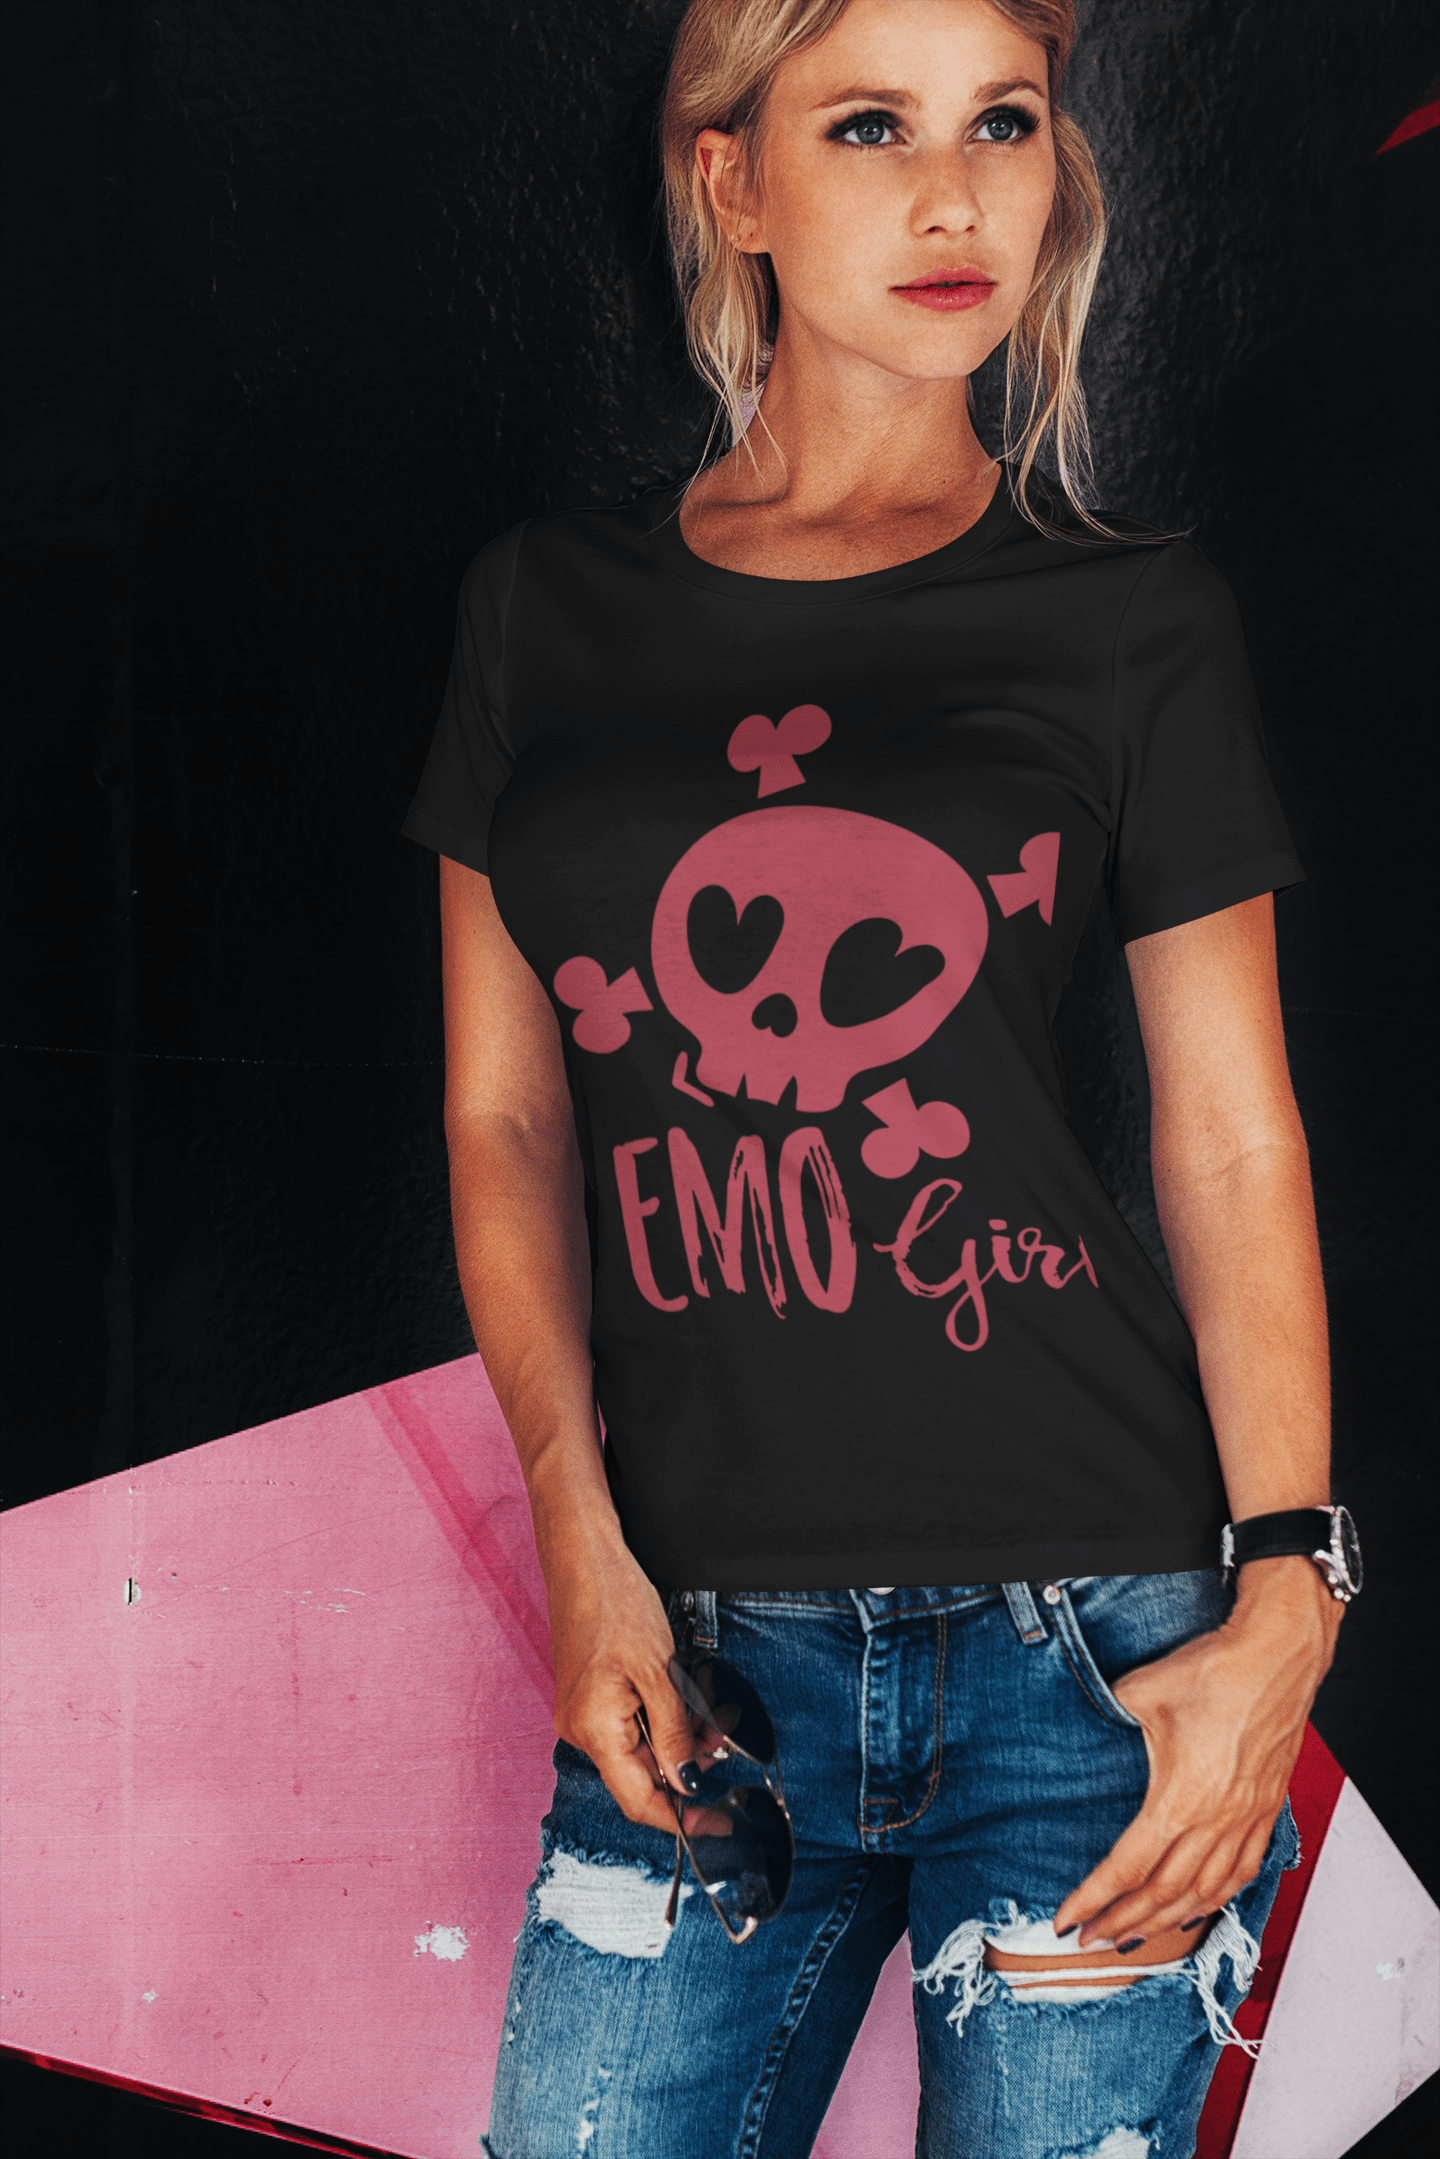 I LOVE HEART EMO GIRLS' Women's V-Neck T-Shirt